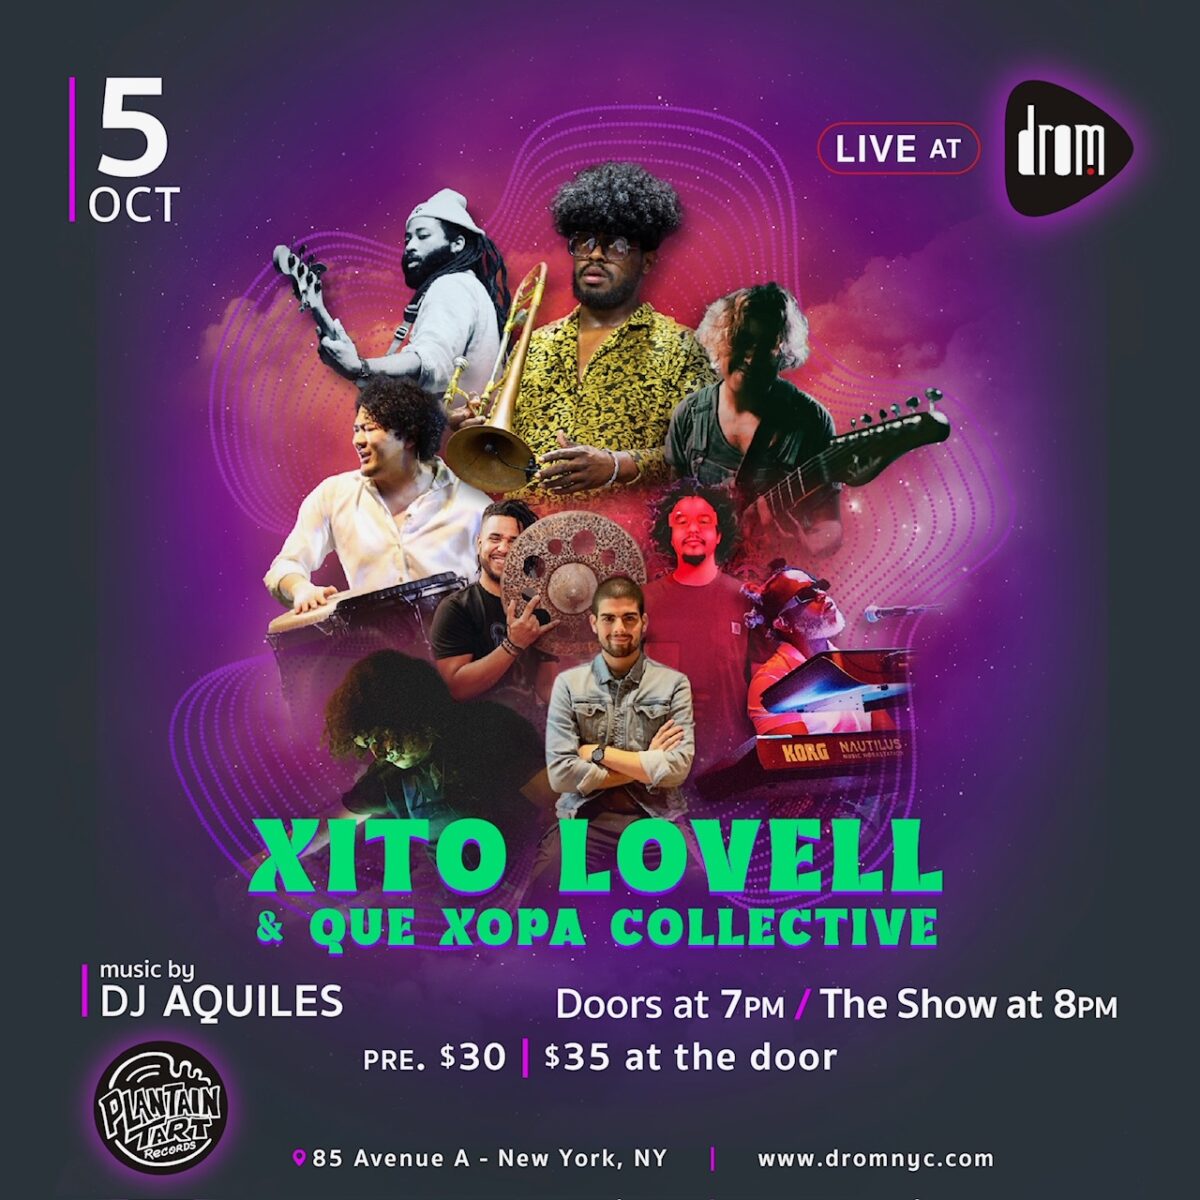 Xito Lovell & Que Xopa collective